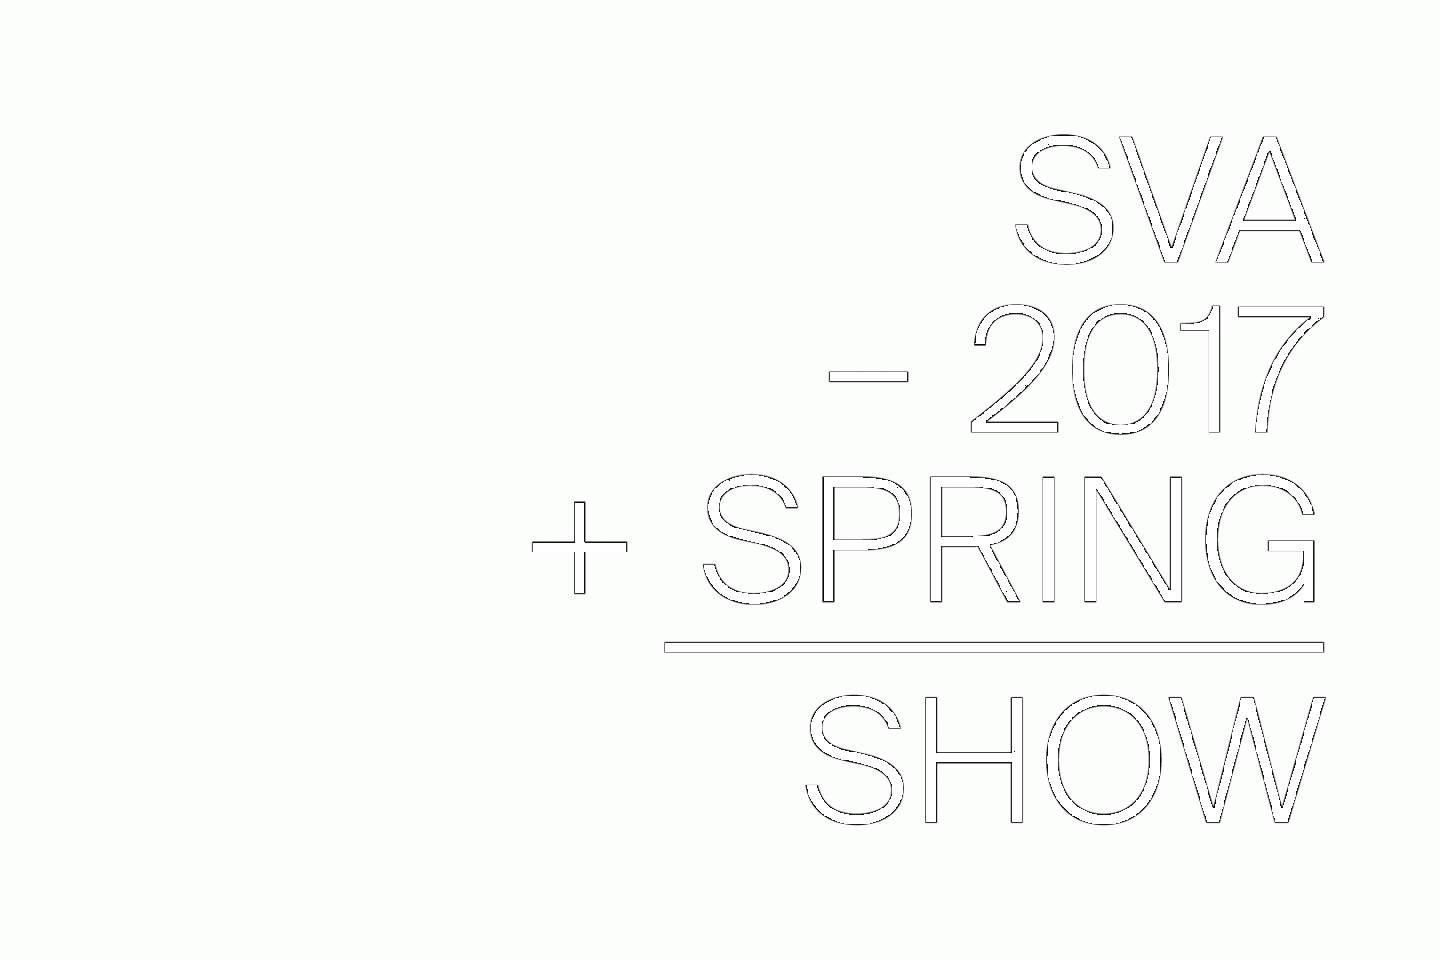 SVA SPRING SHOW 2017